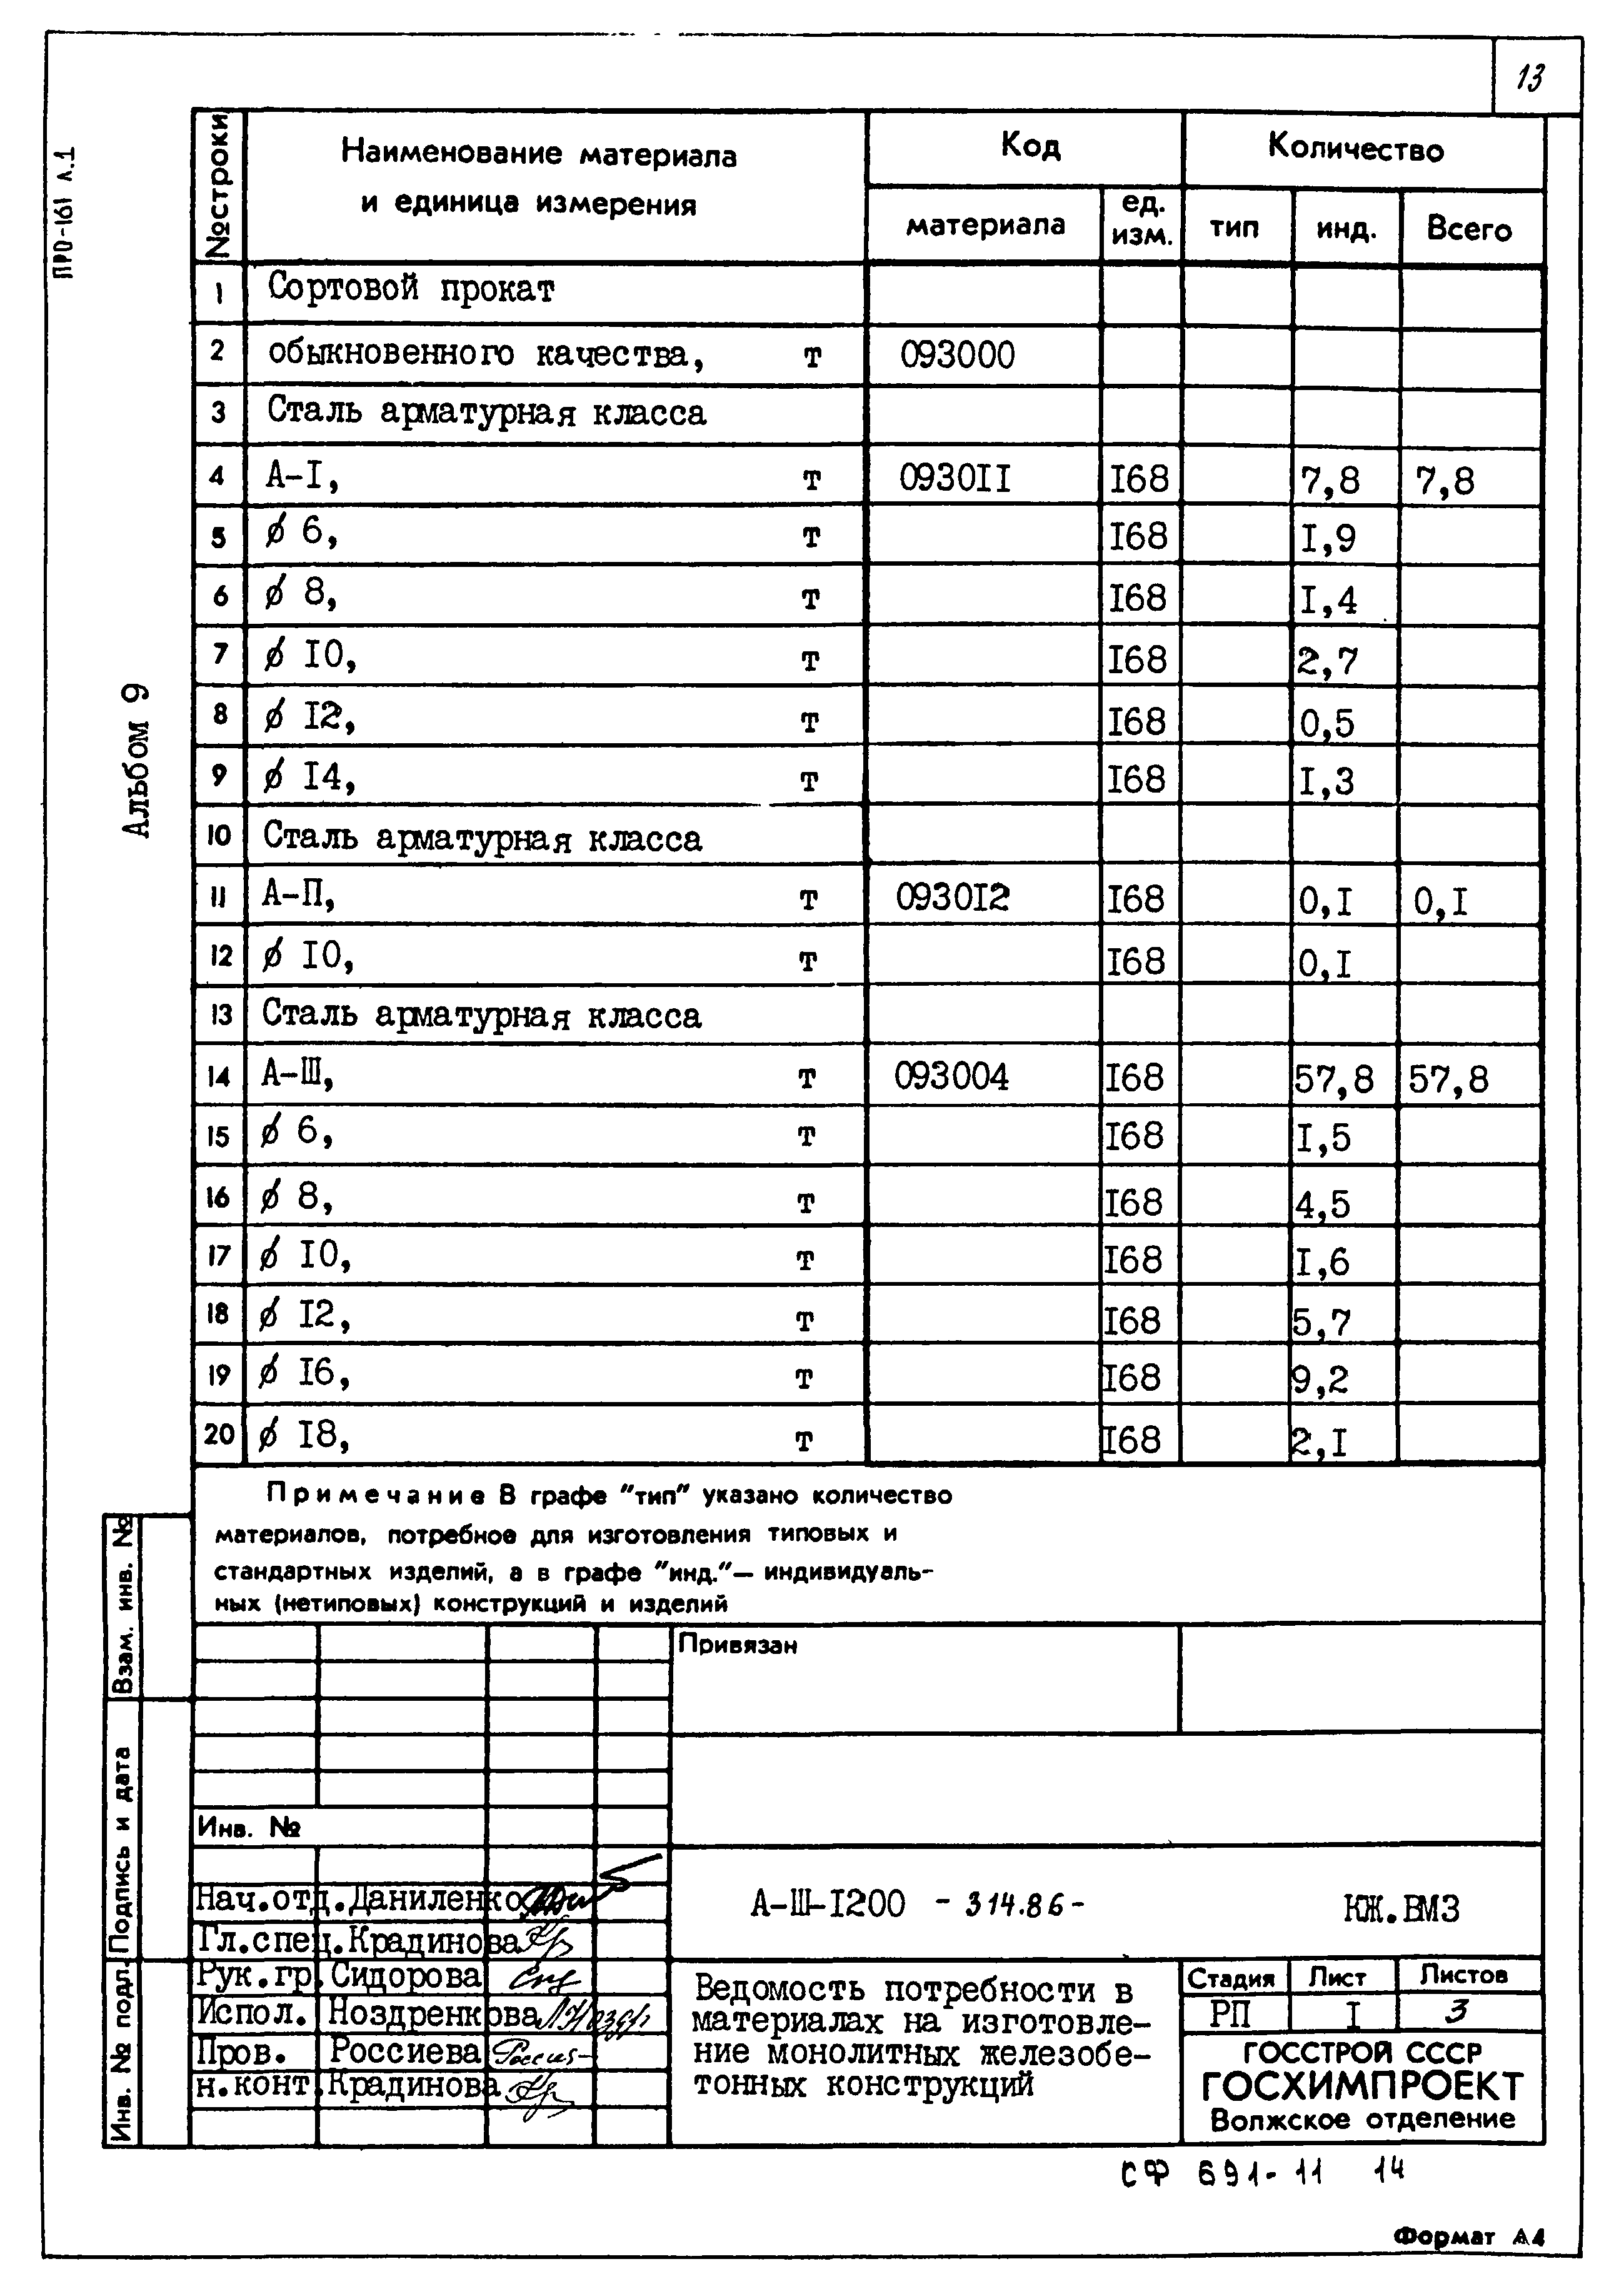 Типовой проект А-II,III,IV-1200-314.86